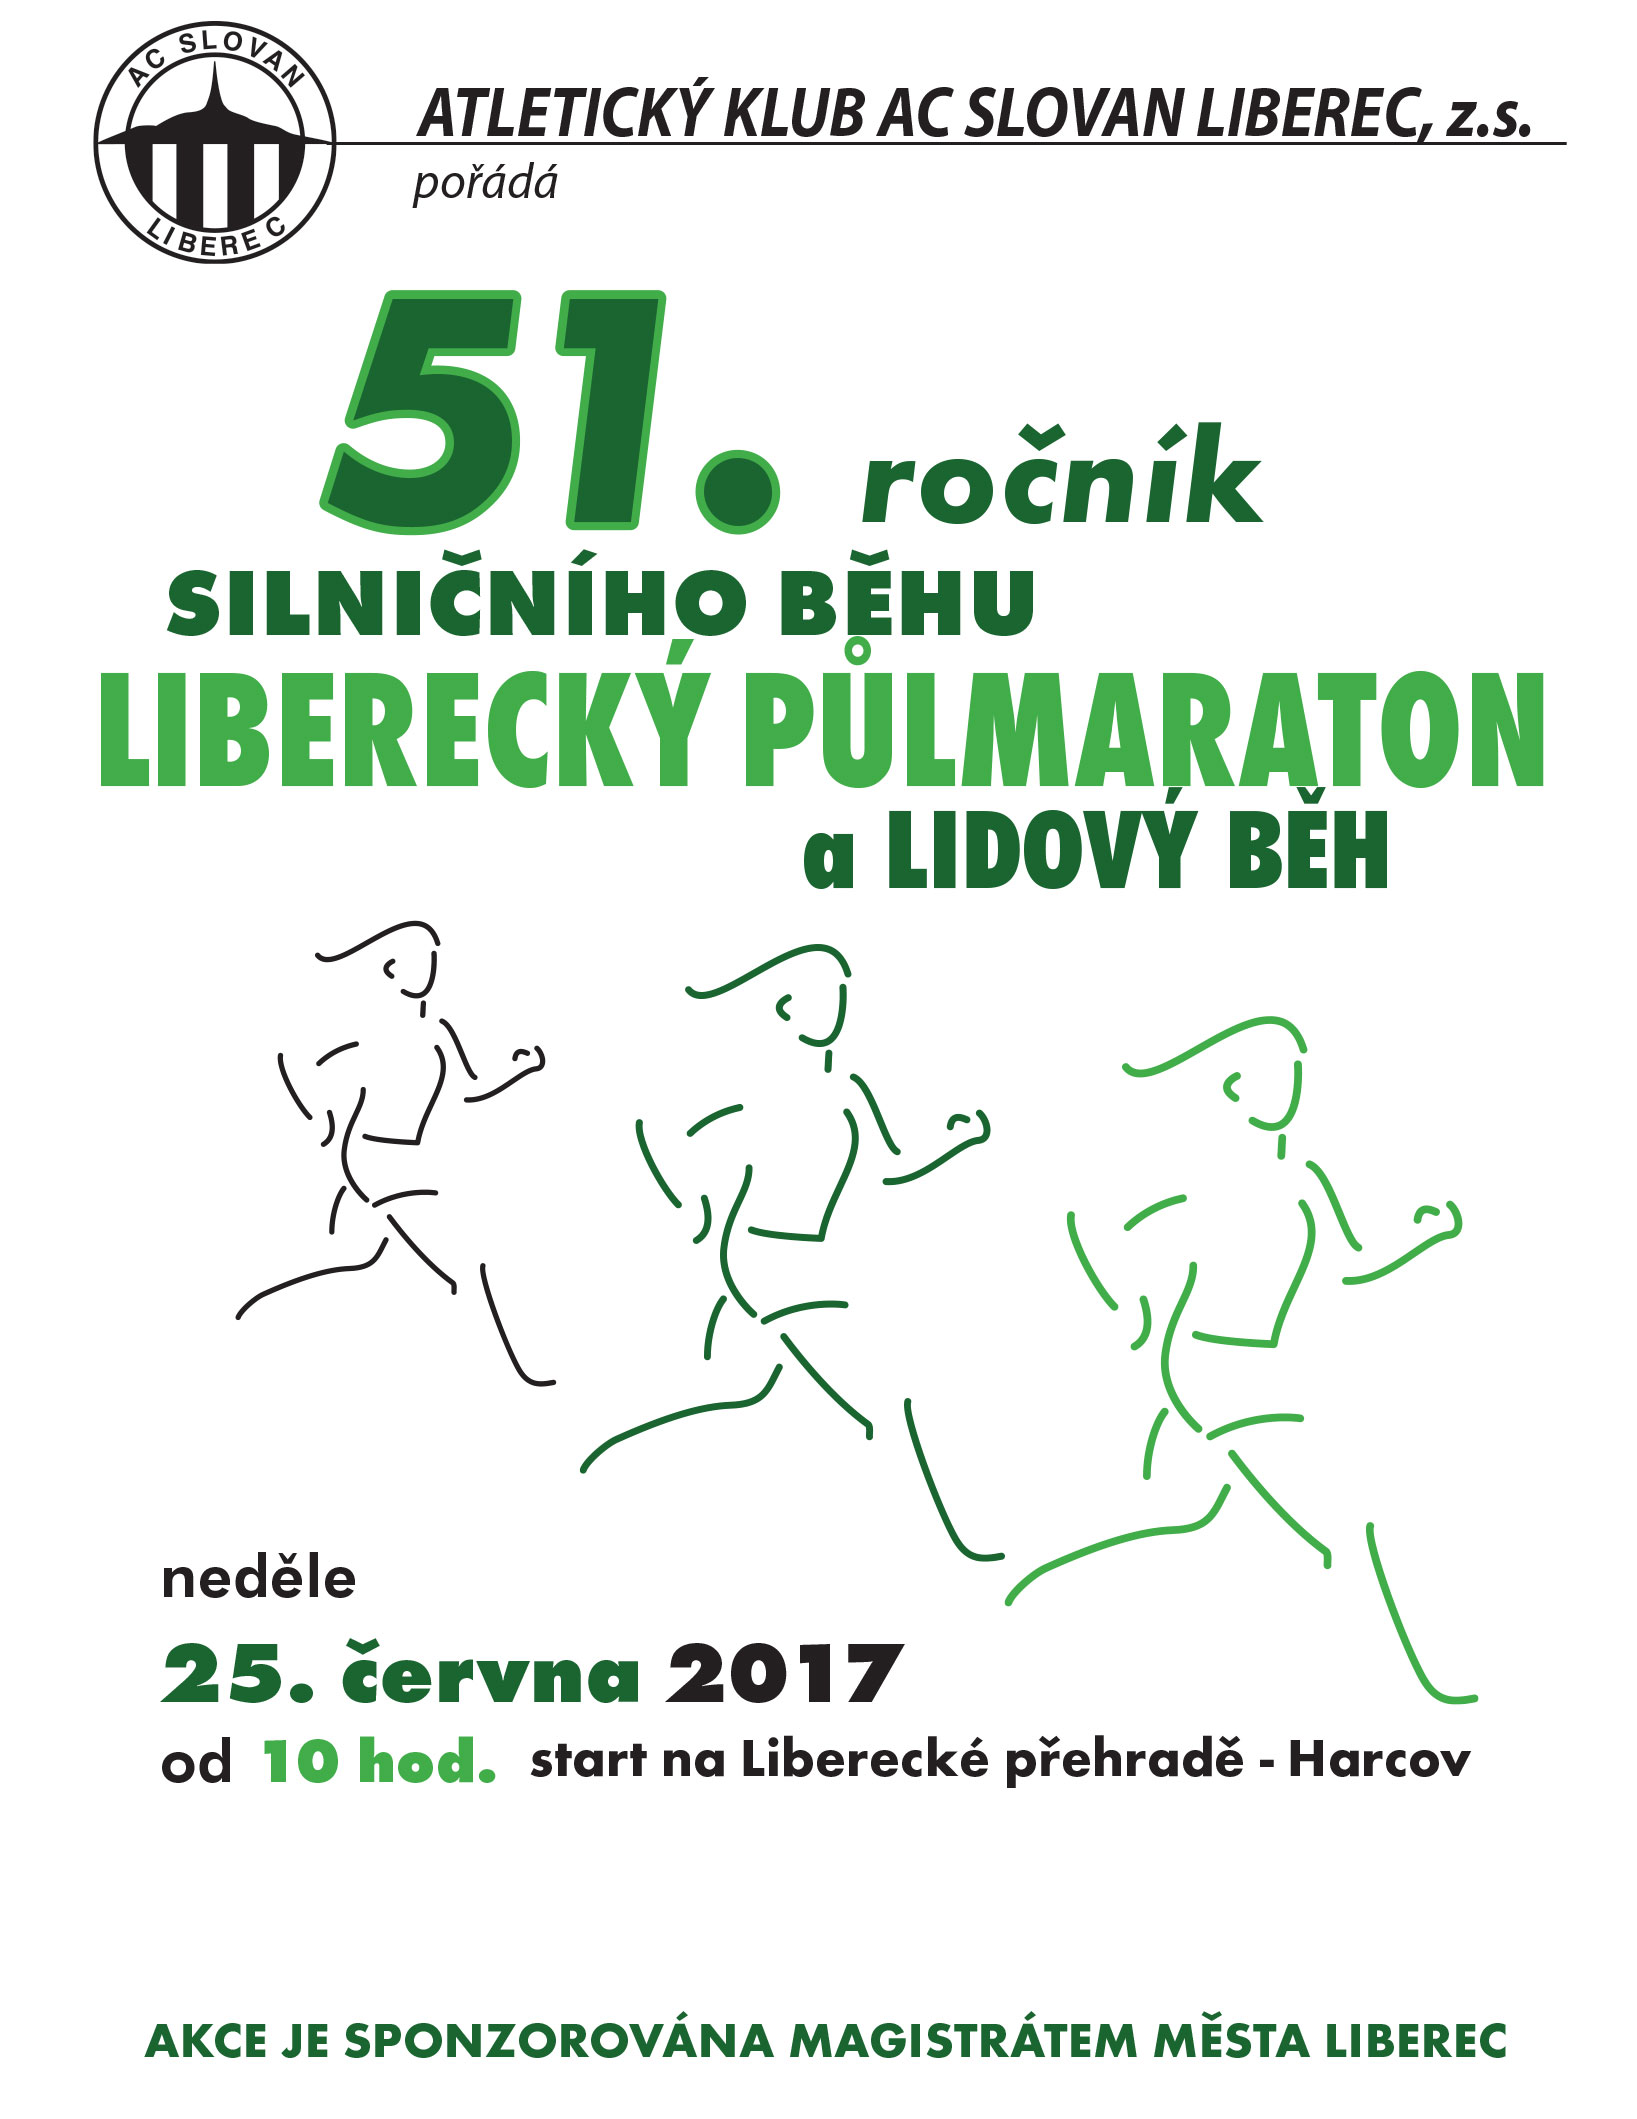 Lbcpulmaraton_2017-1